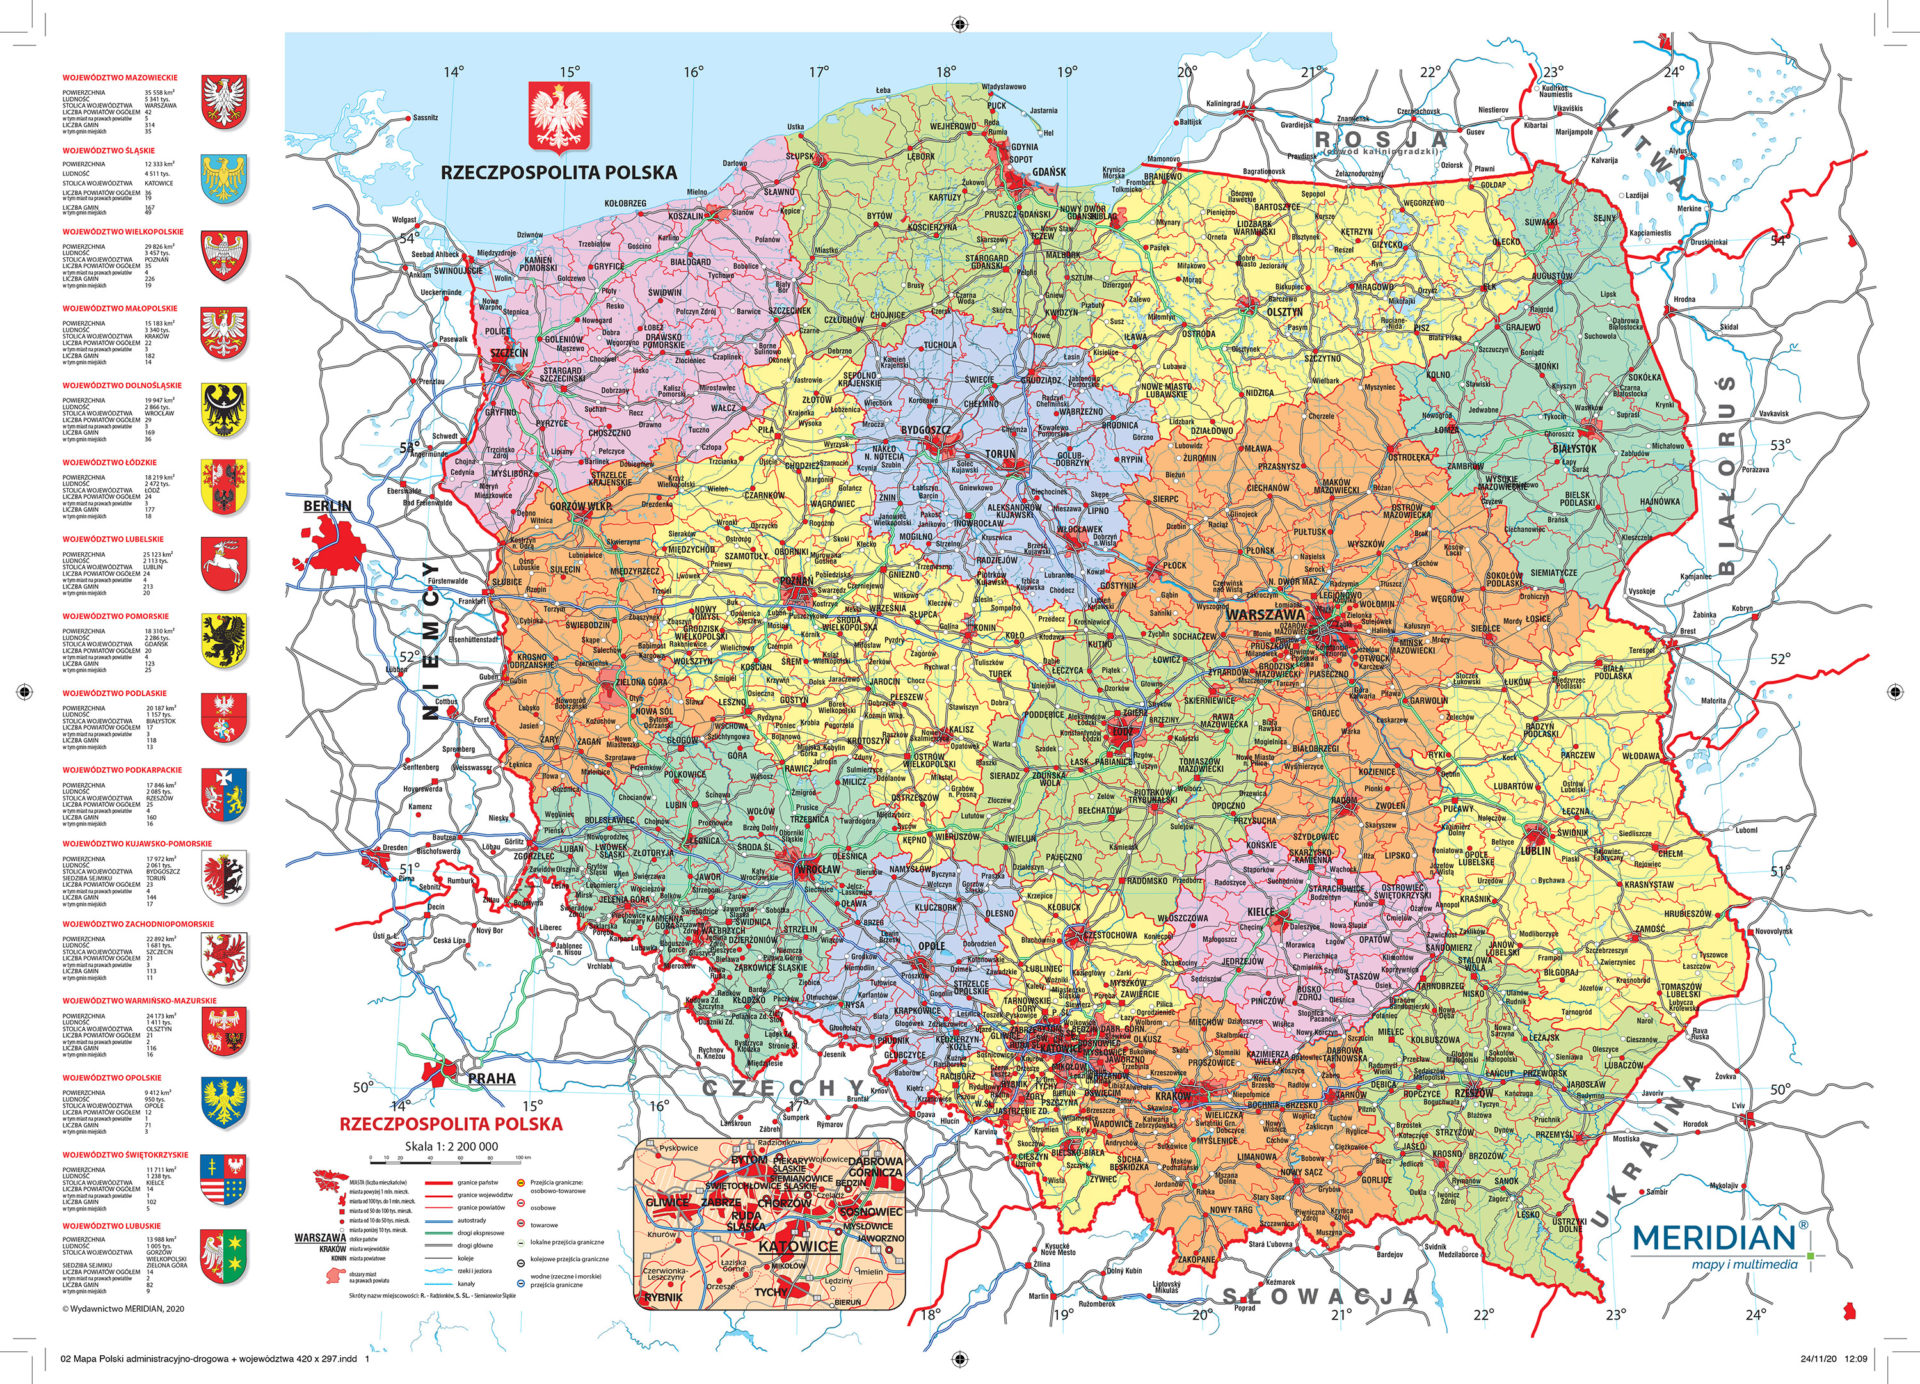 Kalendarz Mapa Polski adm drogowa i wojew